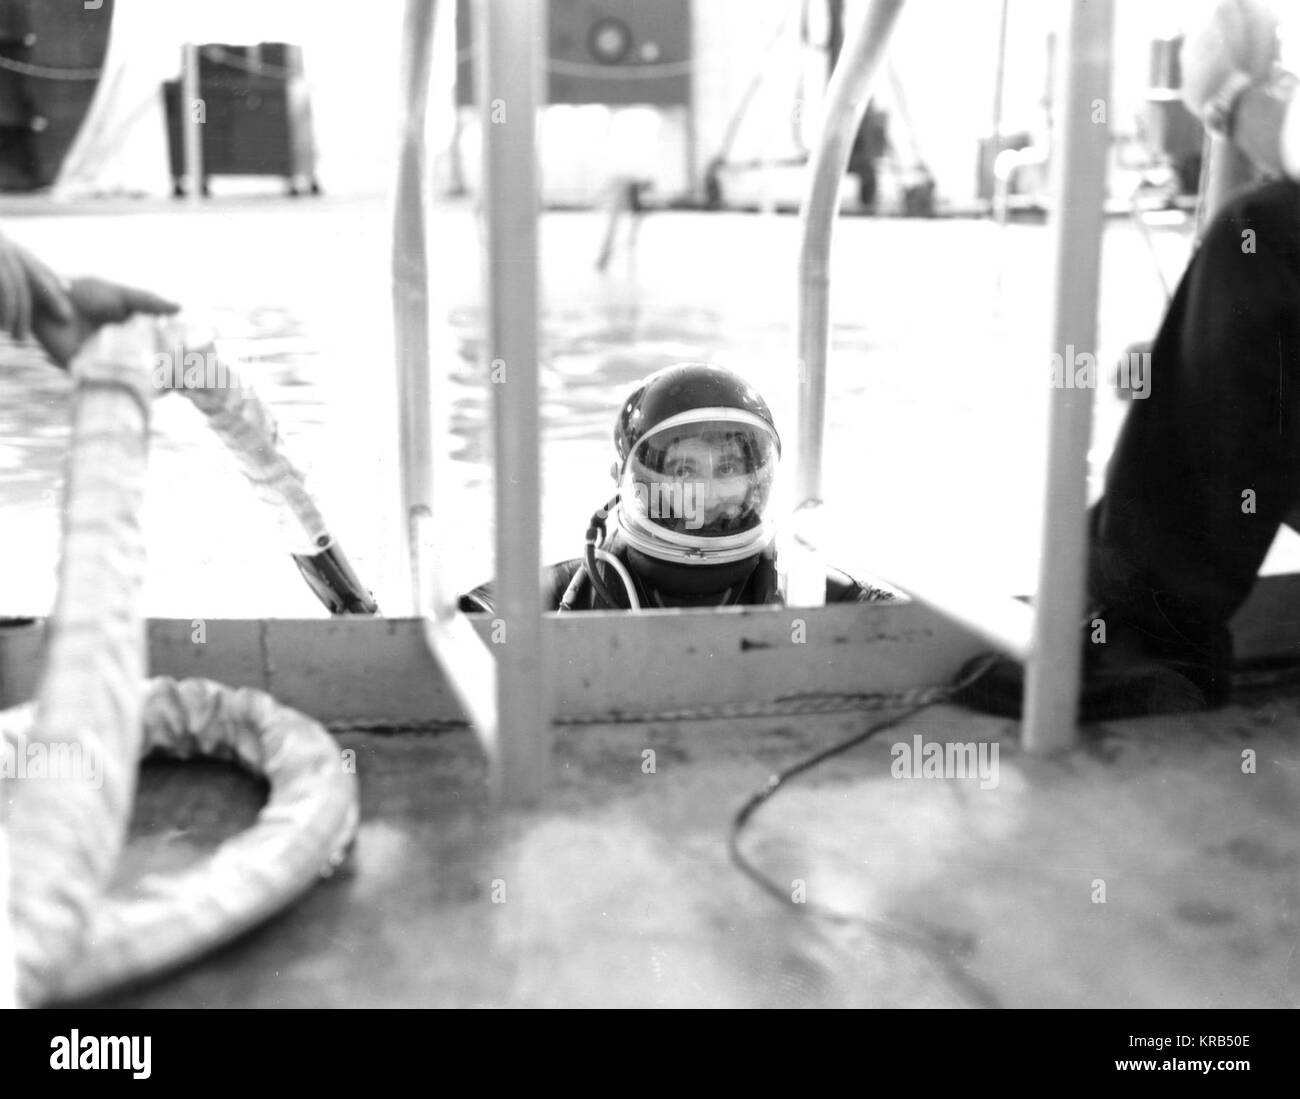 MARSHALL Space Flight Center (MSFC) Direttore, DR. VON BRAUN, sommerge dopo aver trascorso qualche tempo sotto l'acqua nell'MSFC galleggiabilità neutra Simulator (NBS). Ponderato per un galleggiamento neutro condizione, DR. VON BRAUN è stato in grado di eseguire attività subacquea che simulate condizioni di assenza di peso trovato nello spazio. Von Braun ottiene in 25 piedi di diametro galleggiabilità neutra Simulator Foto Stock